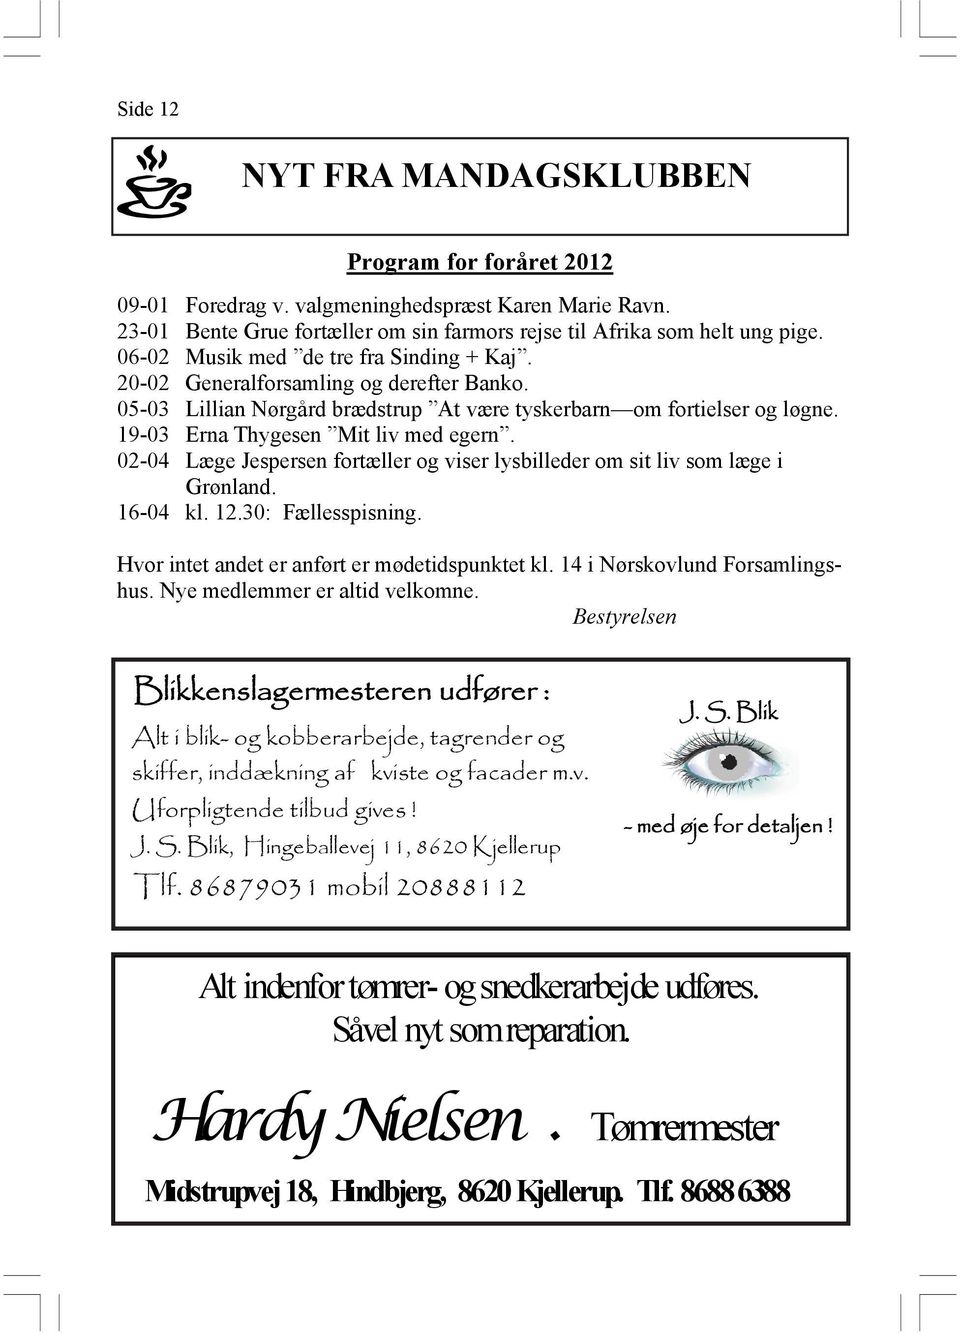 02-04 Læge Jespersen fortæller og viser lysbilleder om sit liv som læge i Grønland. 16-04 kl. 12.30: Fællesspisning. Hvor intet andet er anført er mødetidspunktet kl. 14 i Nørskovlund Forsamlingshus.